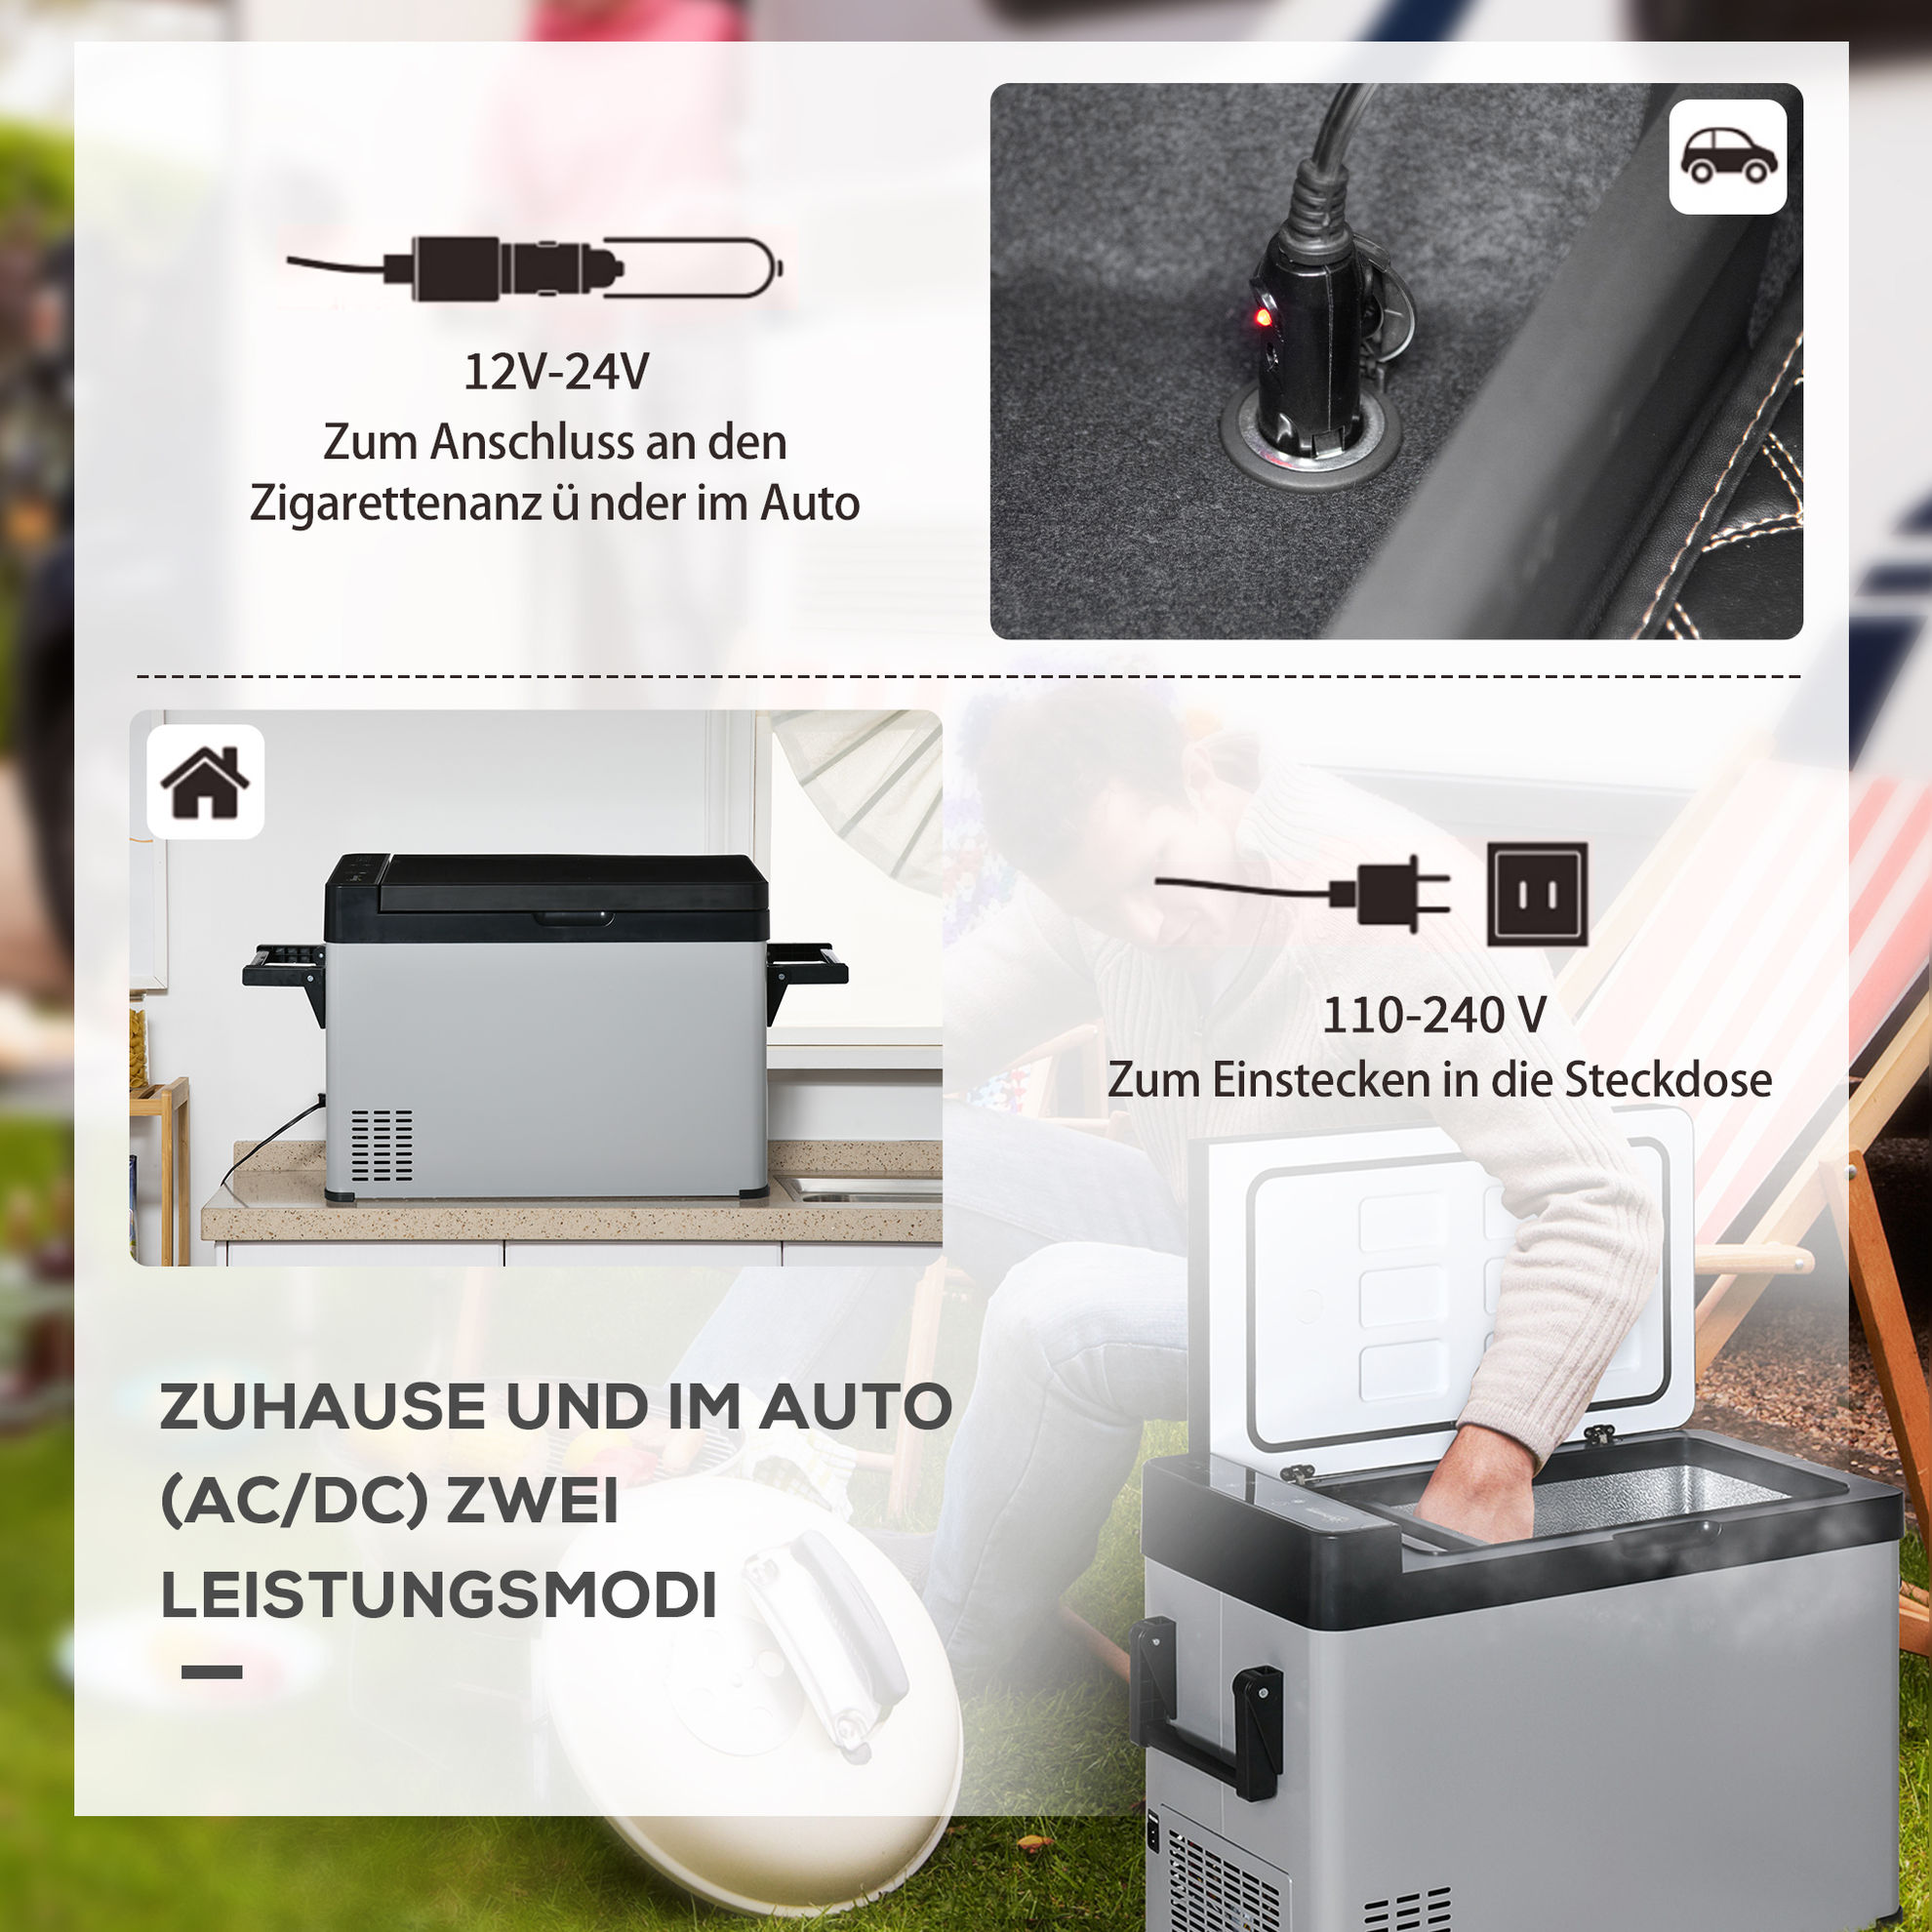 Kühlbox mit Fußhocker bunt Farbe: grau, schwarz online kaufen